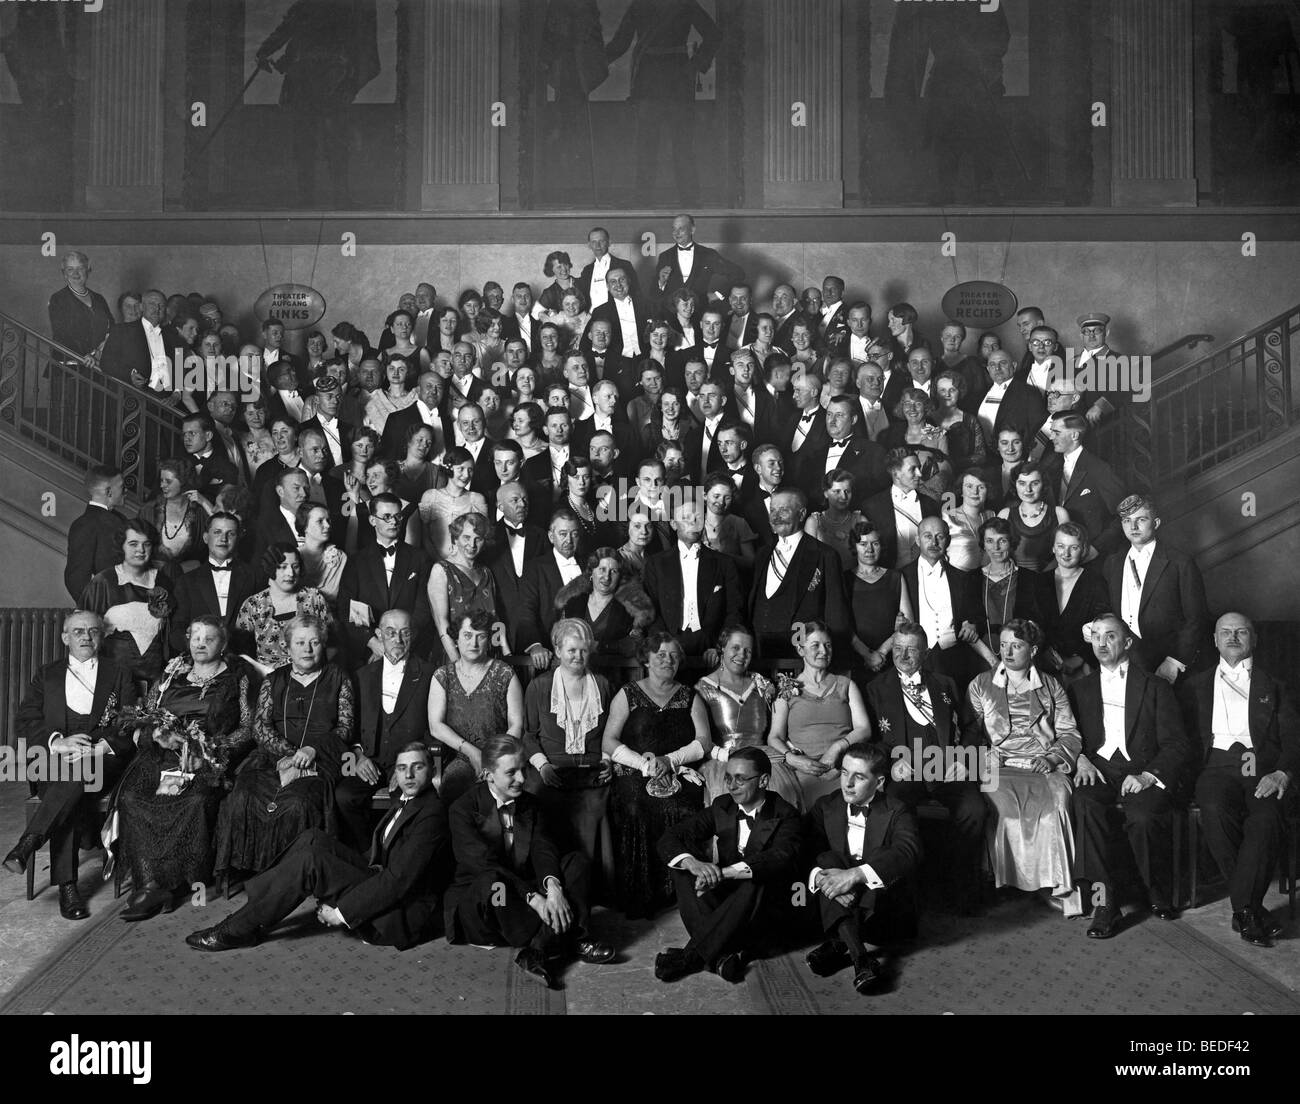 Historisches Foto, große Gruppe von Menschen in einem Theater, um 1925 Stockfoto